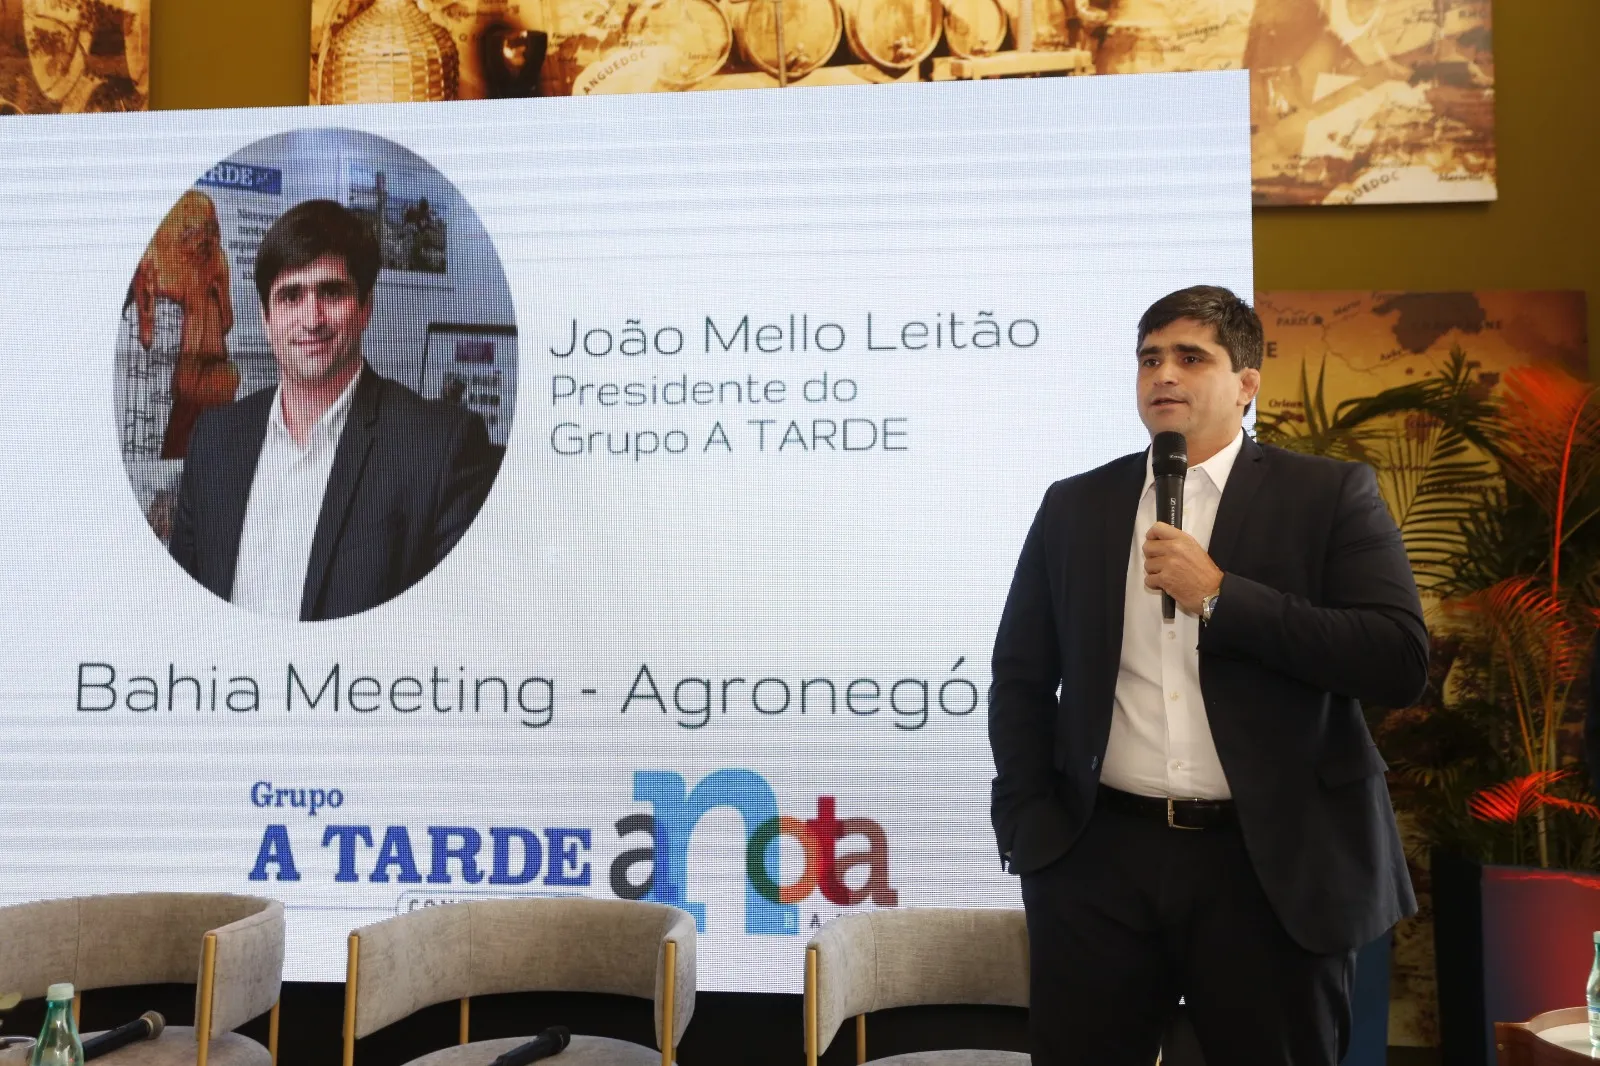 Presidente do Grupo A TARDE, João Mello Leitão